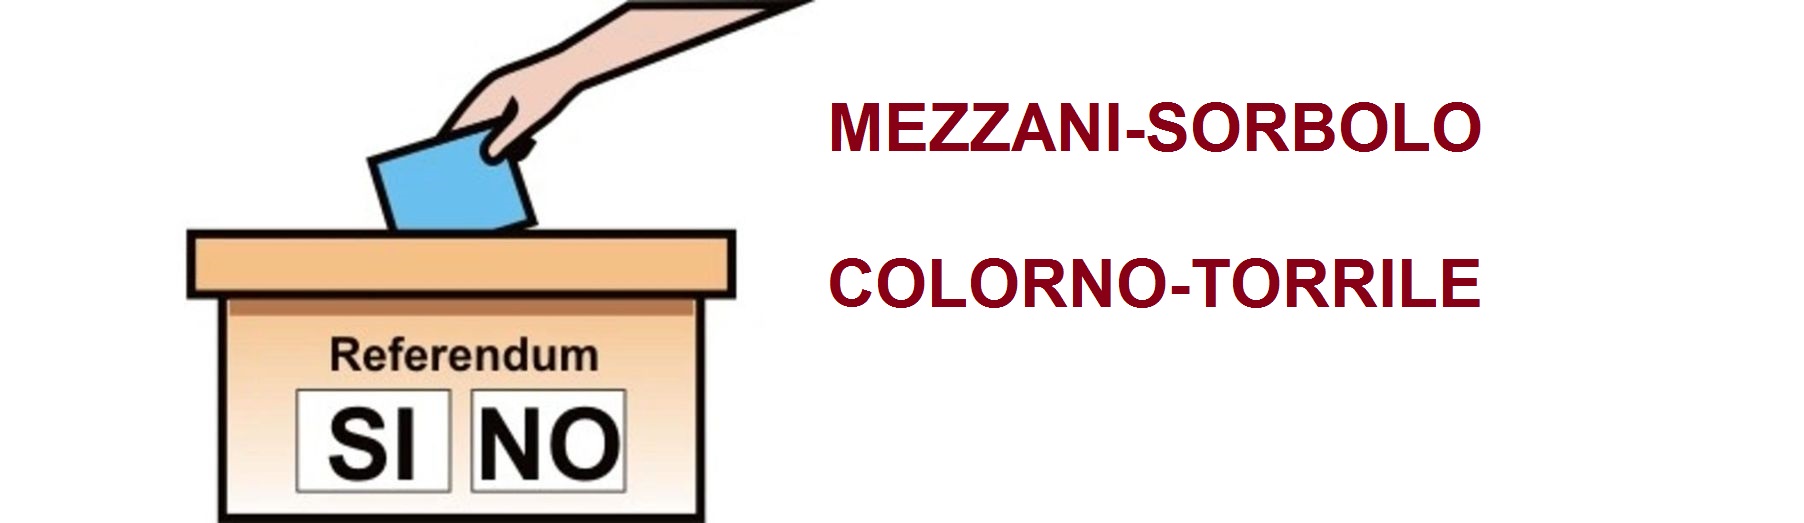 mezzani-sorbolo-colorno-torrile